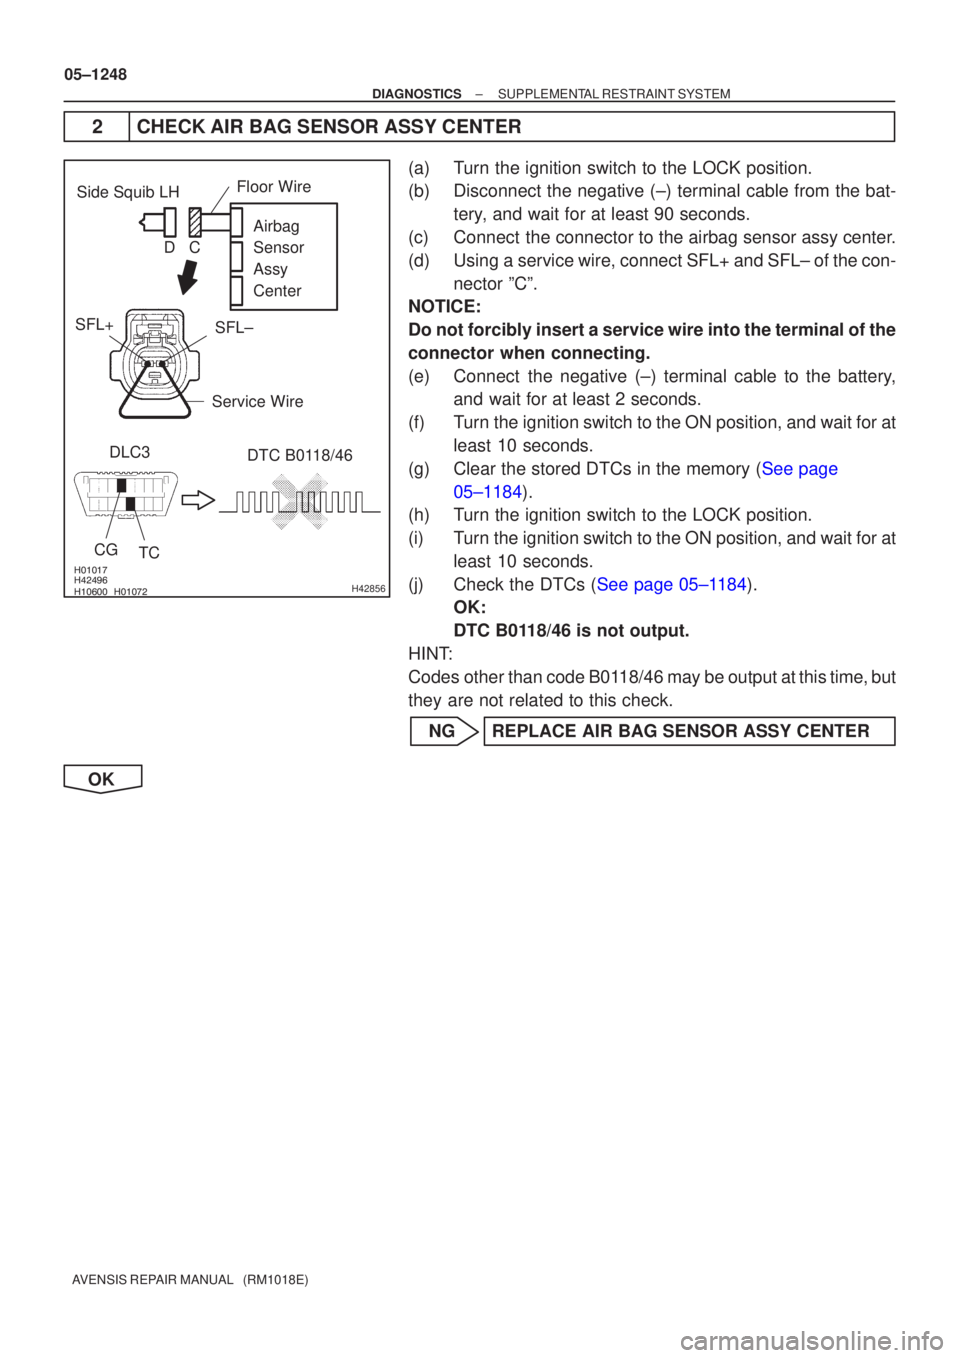 TOYOTA AVENSIS 2005  Service Repair Manual \b
\b \b\bH42856
Side Squib LH
CGTC DTC B0118/46
DLC3 Airbag 
Sensor 
Assy
Center
SFL±
SFL+
Floor Wire
Service Wire
C
D
05±1248
±
DIAGNOSTICS SUPPLEMENTAL RESTRAINT SYSTEM
AVENS